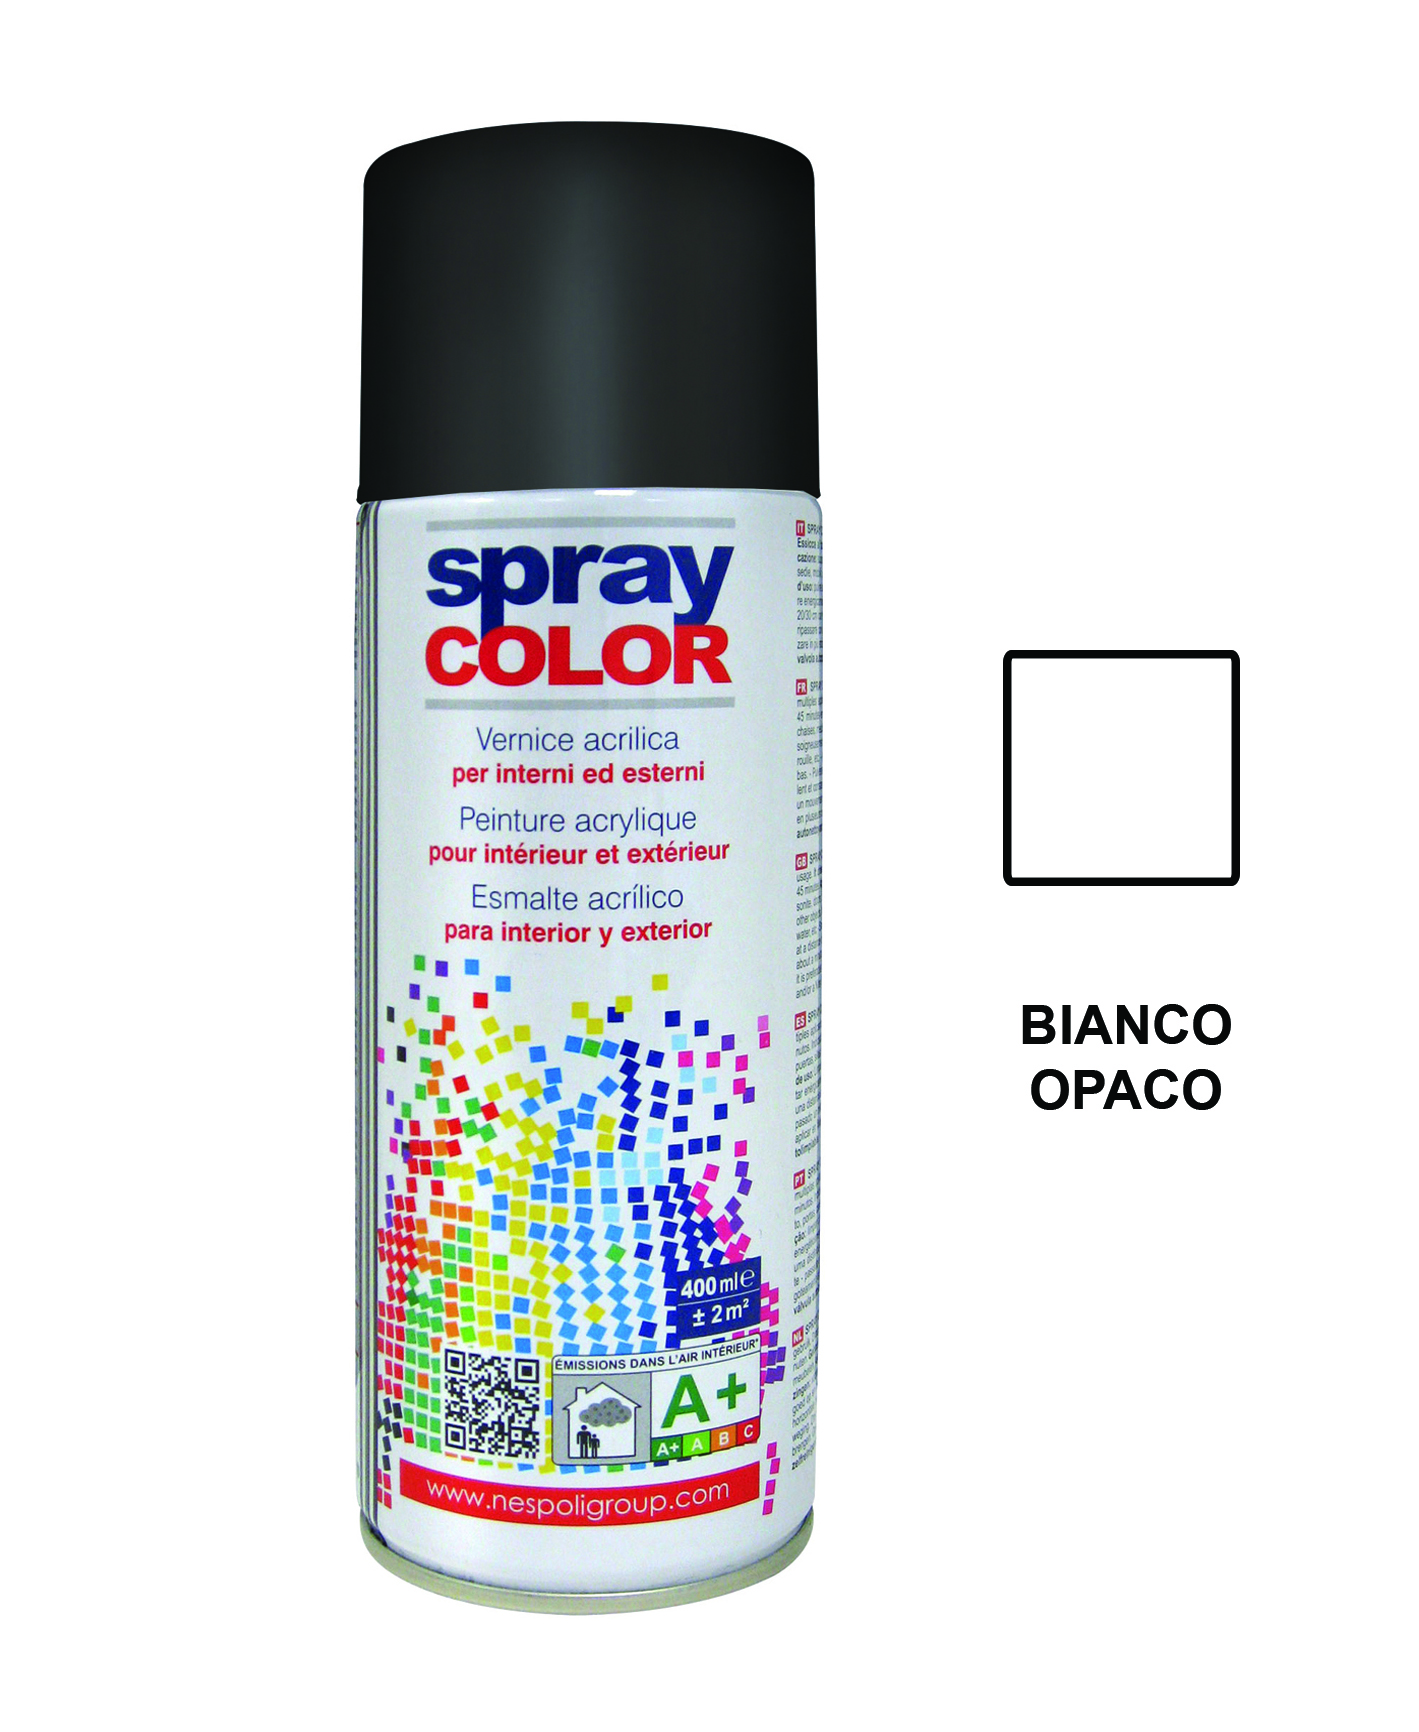 Spraycolor bianco opaco 9010 400ml